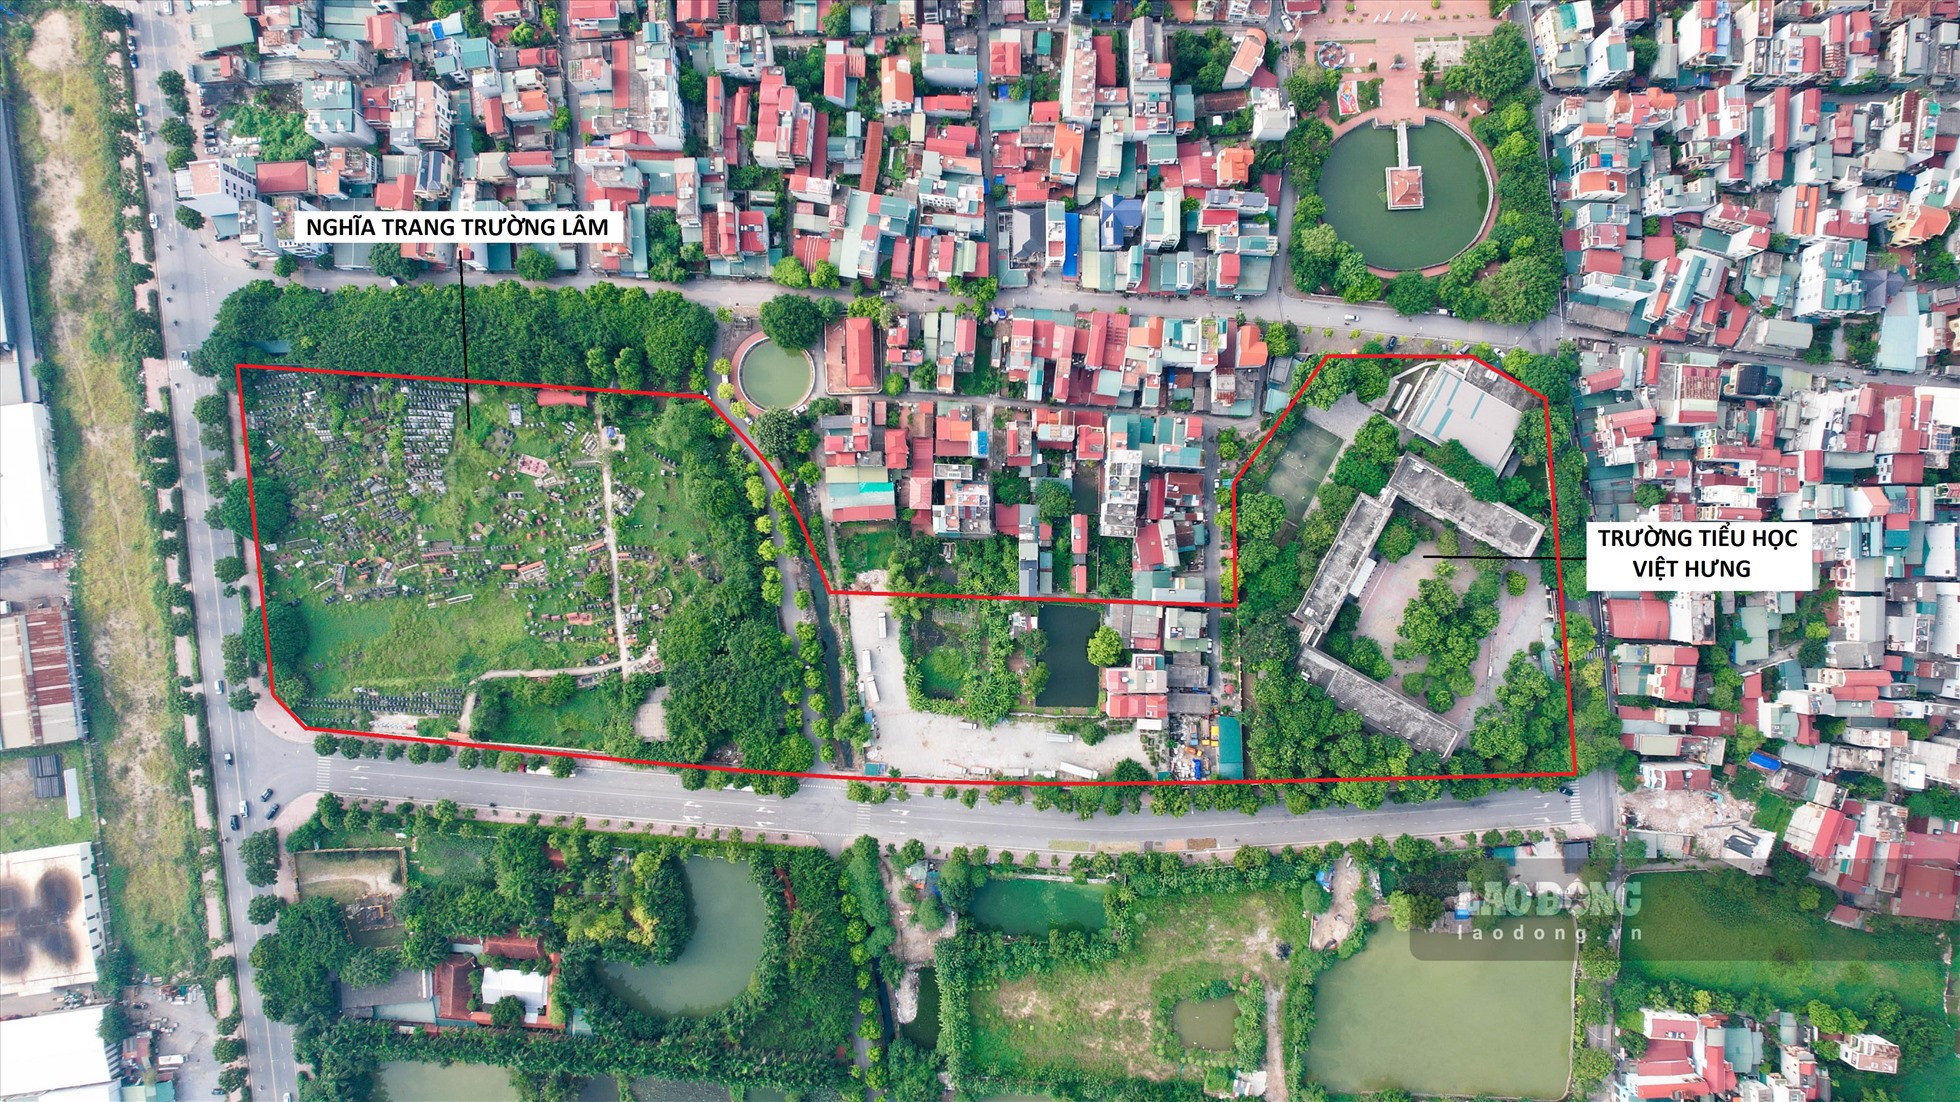 Trên địa bàn phường Việt Hưng (Long Biên) cũng có nhiều khu đất nghĩa trang được quy hoạch xây dựng trường học, trong đó có nghĩa trang Trường Lâm.